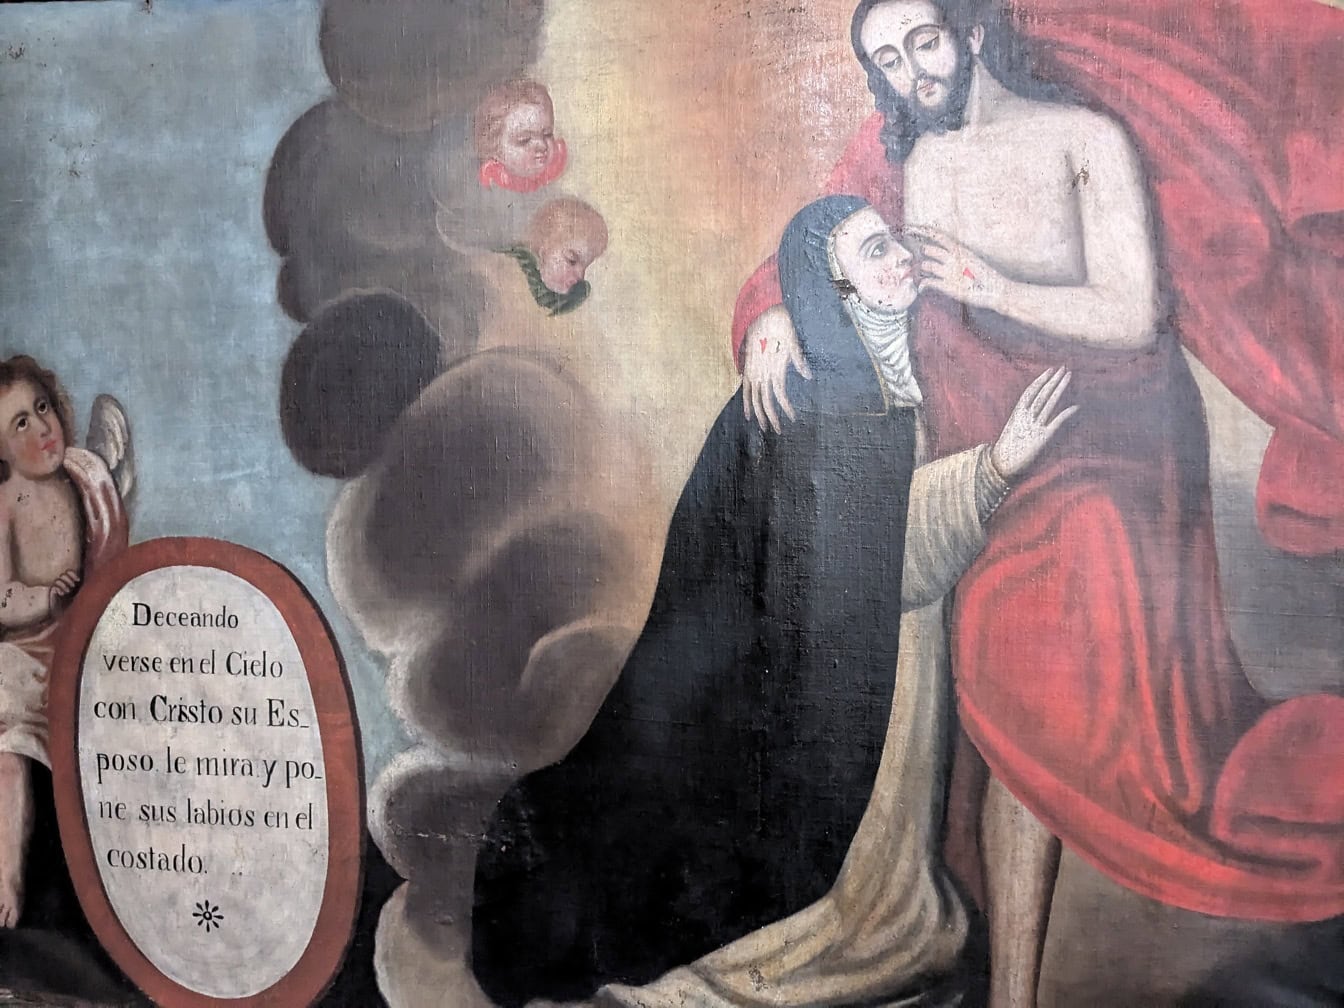 จิตรกรรมฝาผนังของพระเยซูคริสต์แห่งนาซาเร็ธกับแม่ชีที่อารามคาทอลิกในเปรู ซึ่งเป็นงานศิลปะคริสเตียนละตินอเมริกายุคกลาง